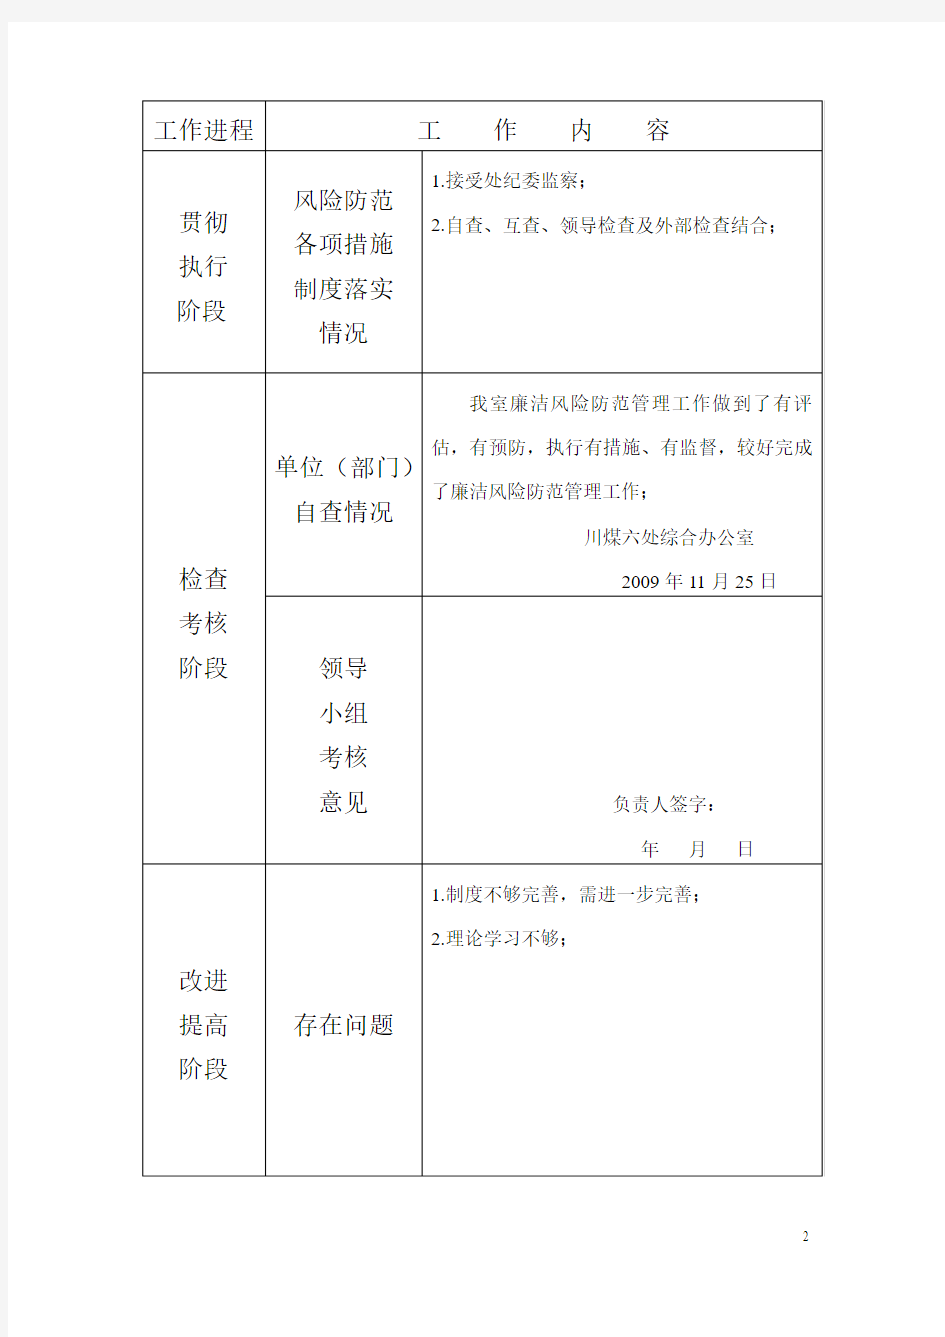 川煤集团达竹公司六处廉洁风险防范管理工作情况登记表1